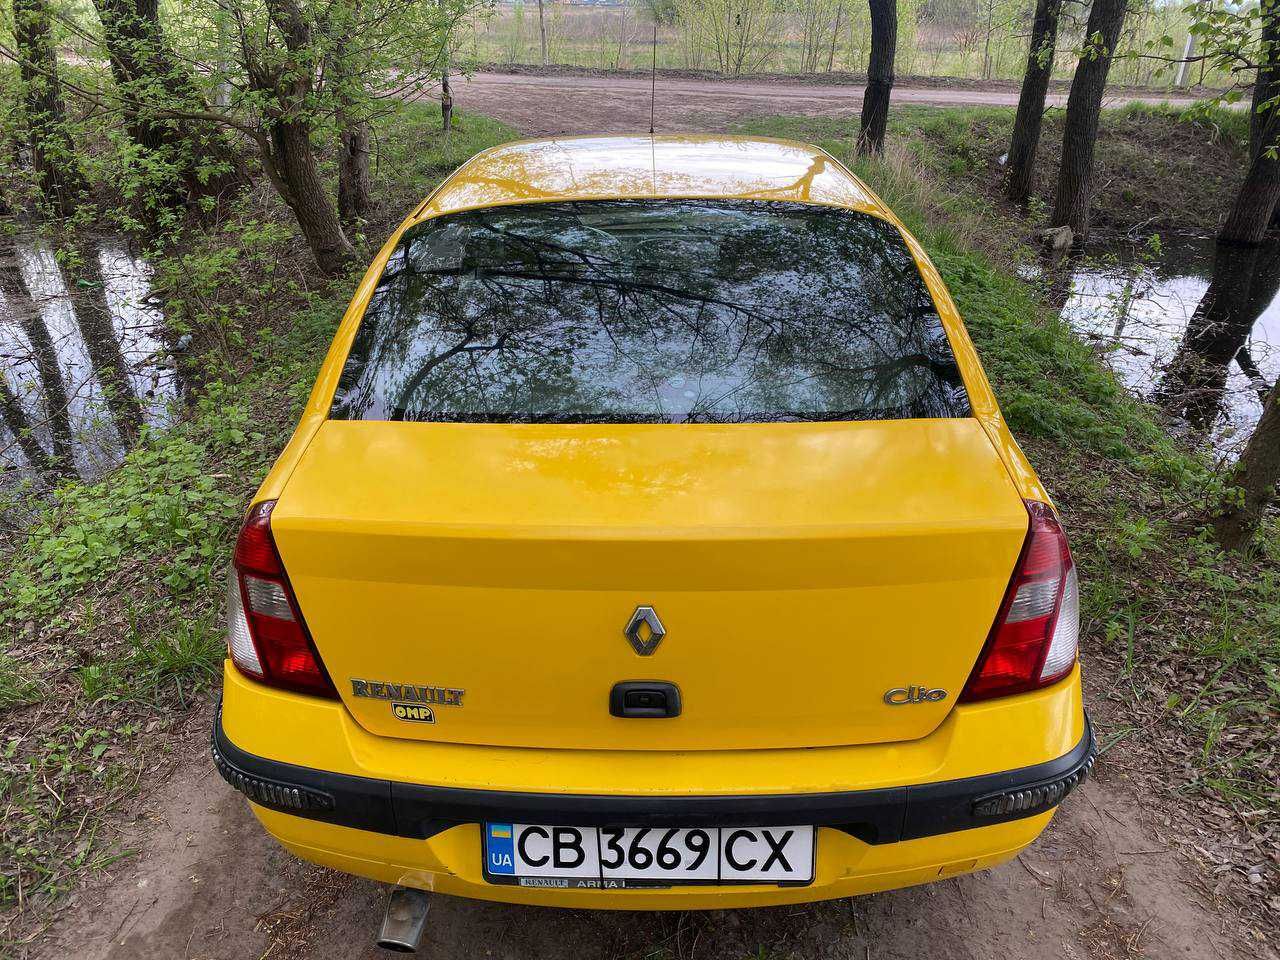 Продам Renault Symbol